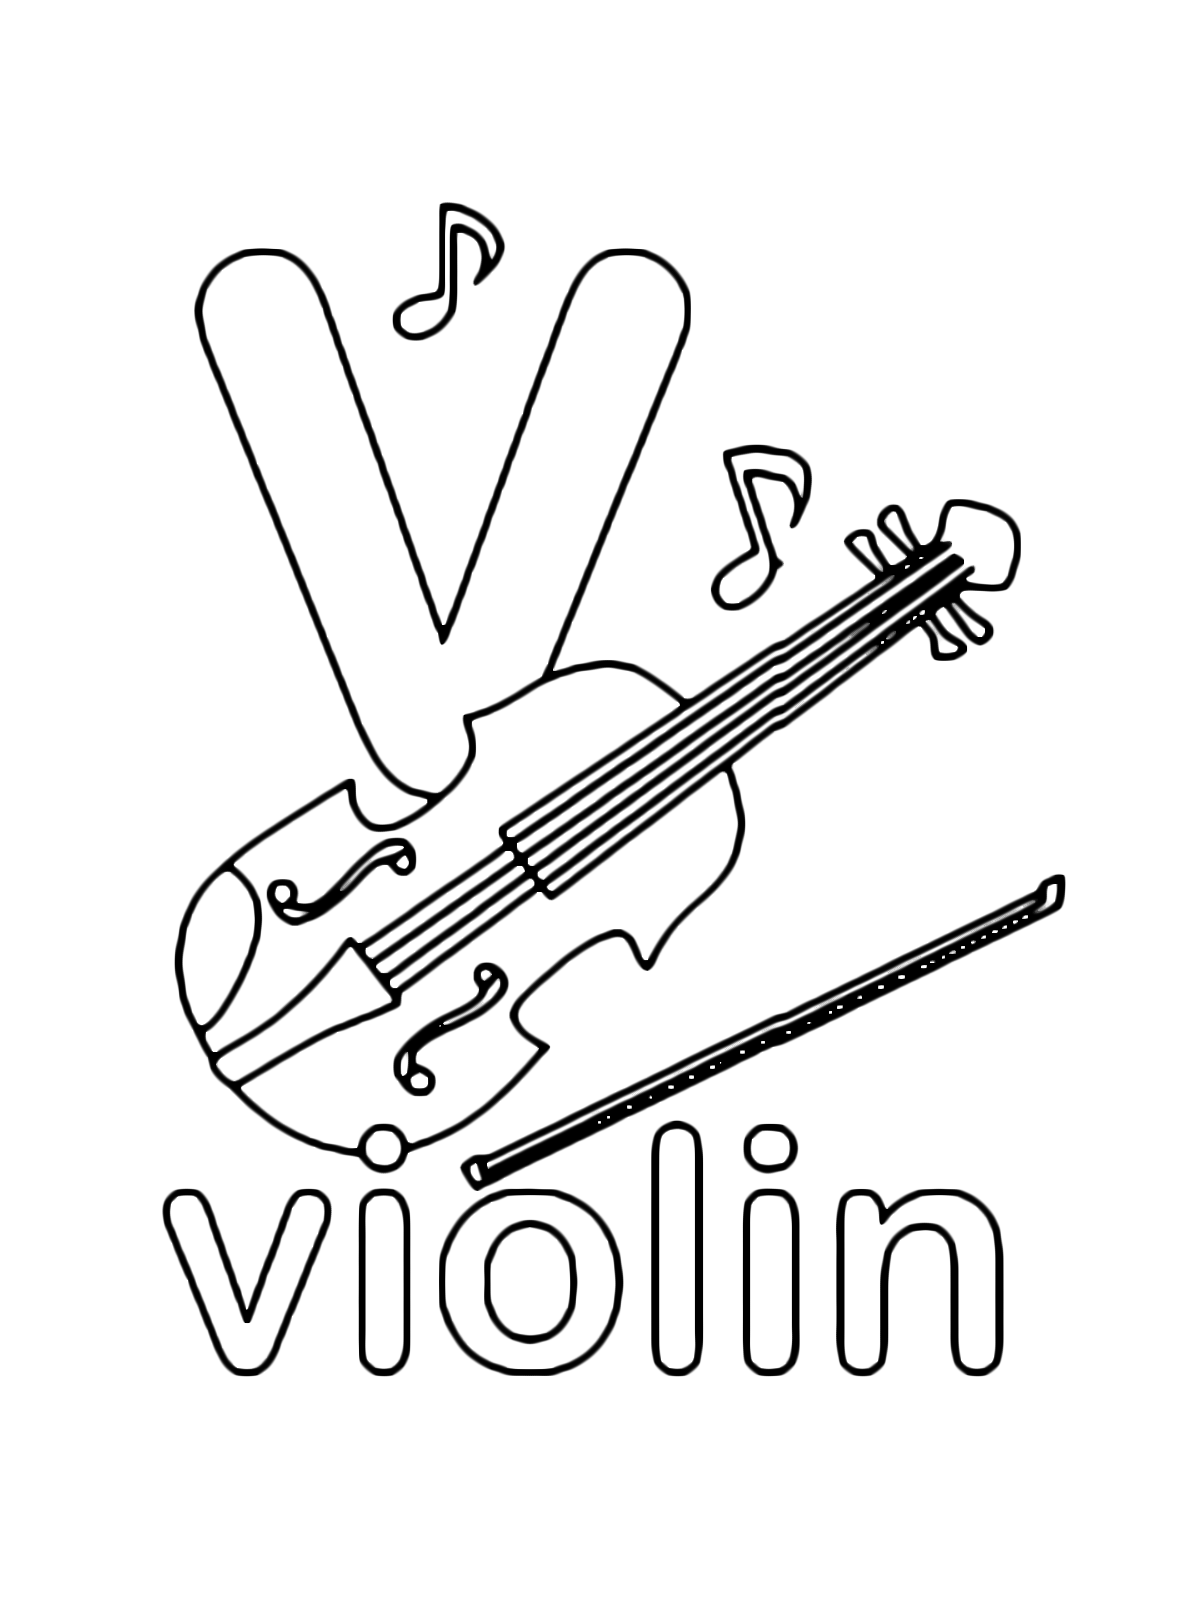 Lettere e numeri - Lettera v in stampato minuscolo di violin (violino) in Inglese